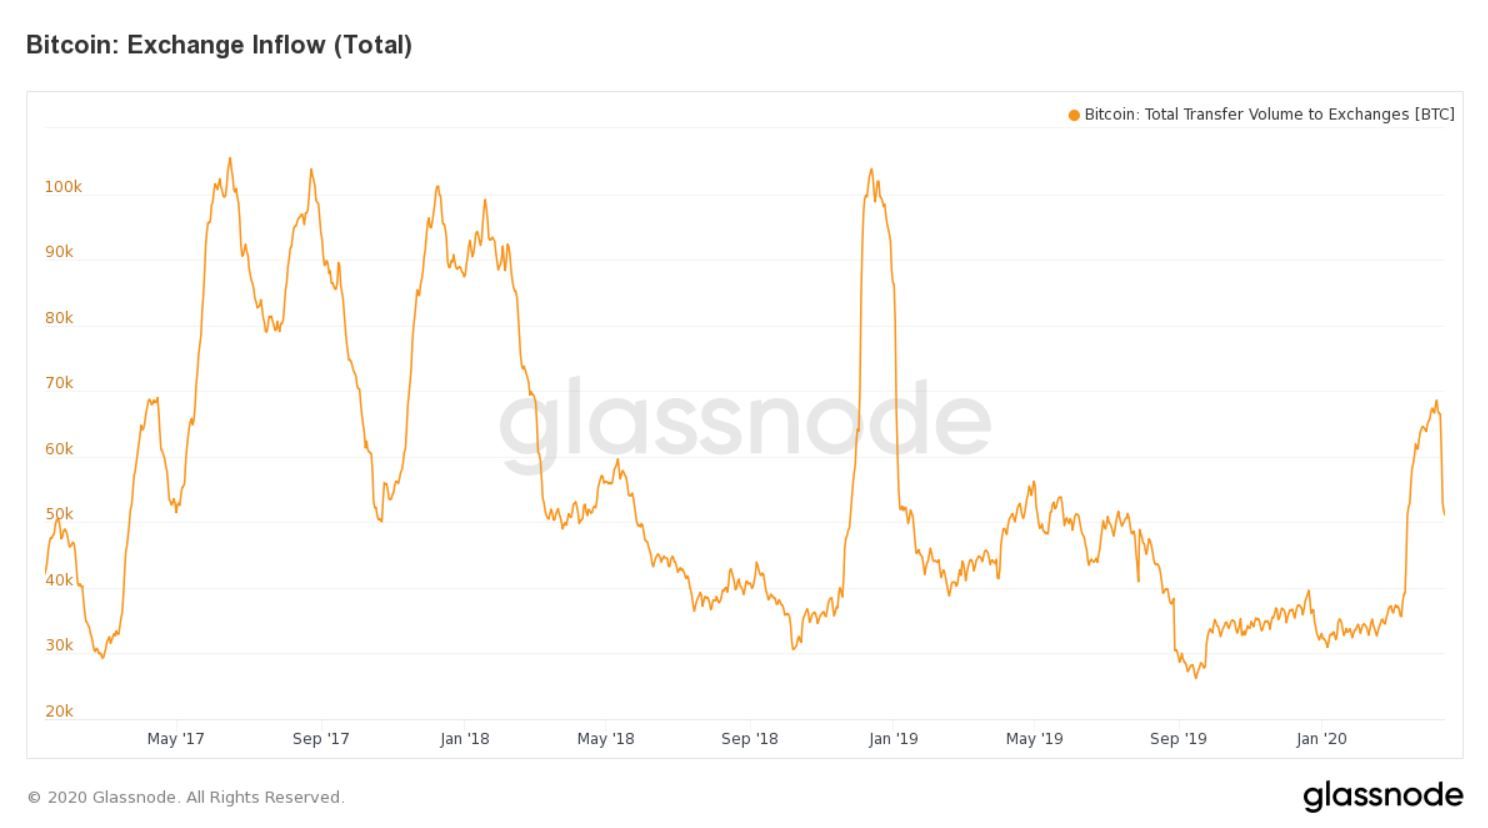 Bitcoin betalingen richting beurzen bereikt laagste punt sinds 2016